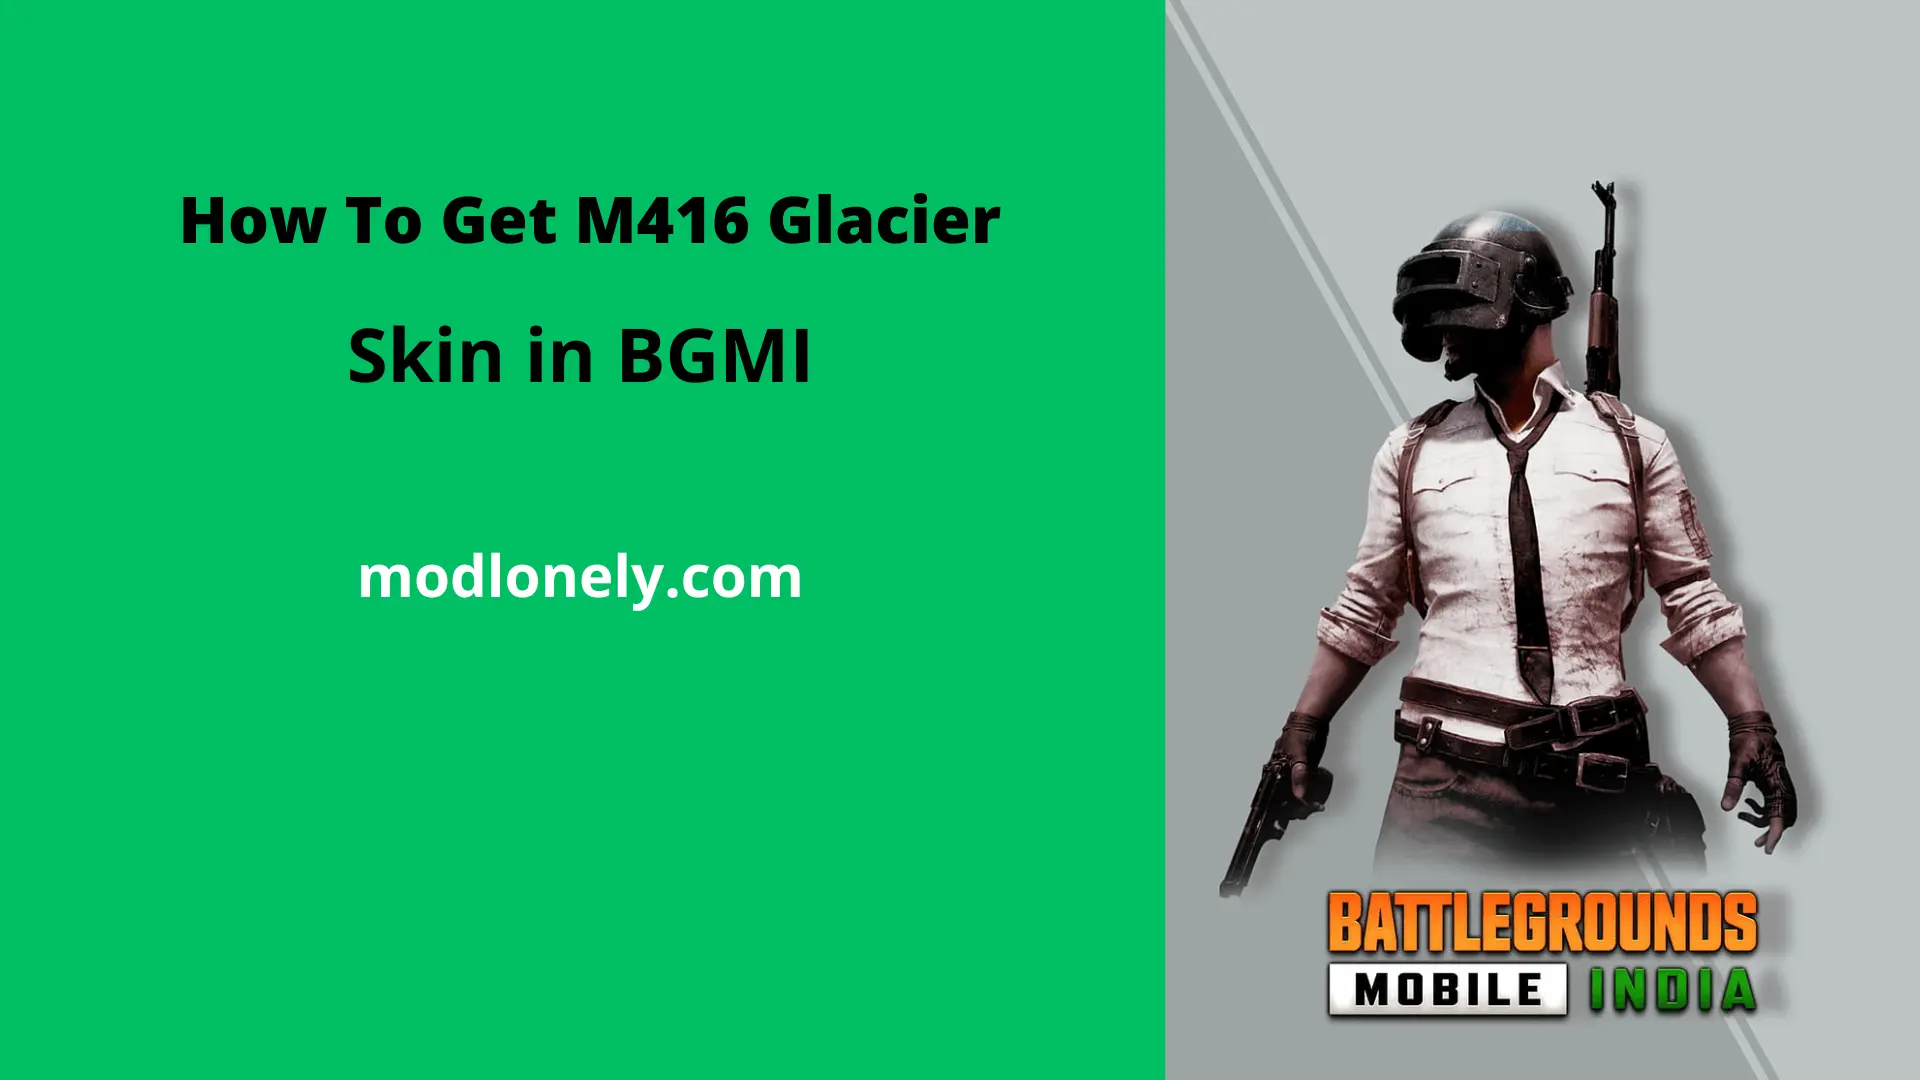 M416 Glacier Skin in BGMI